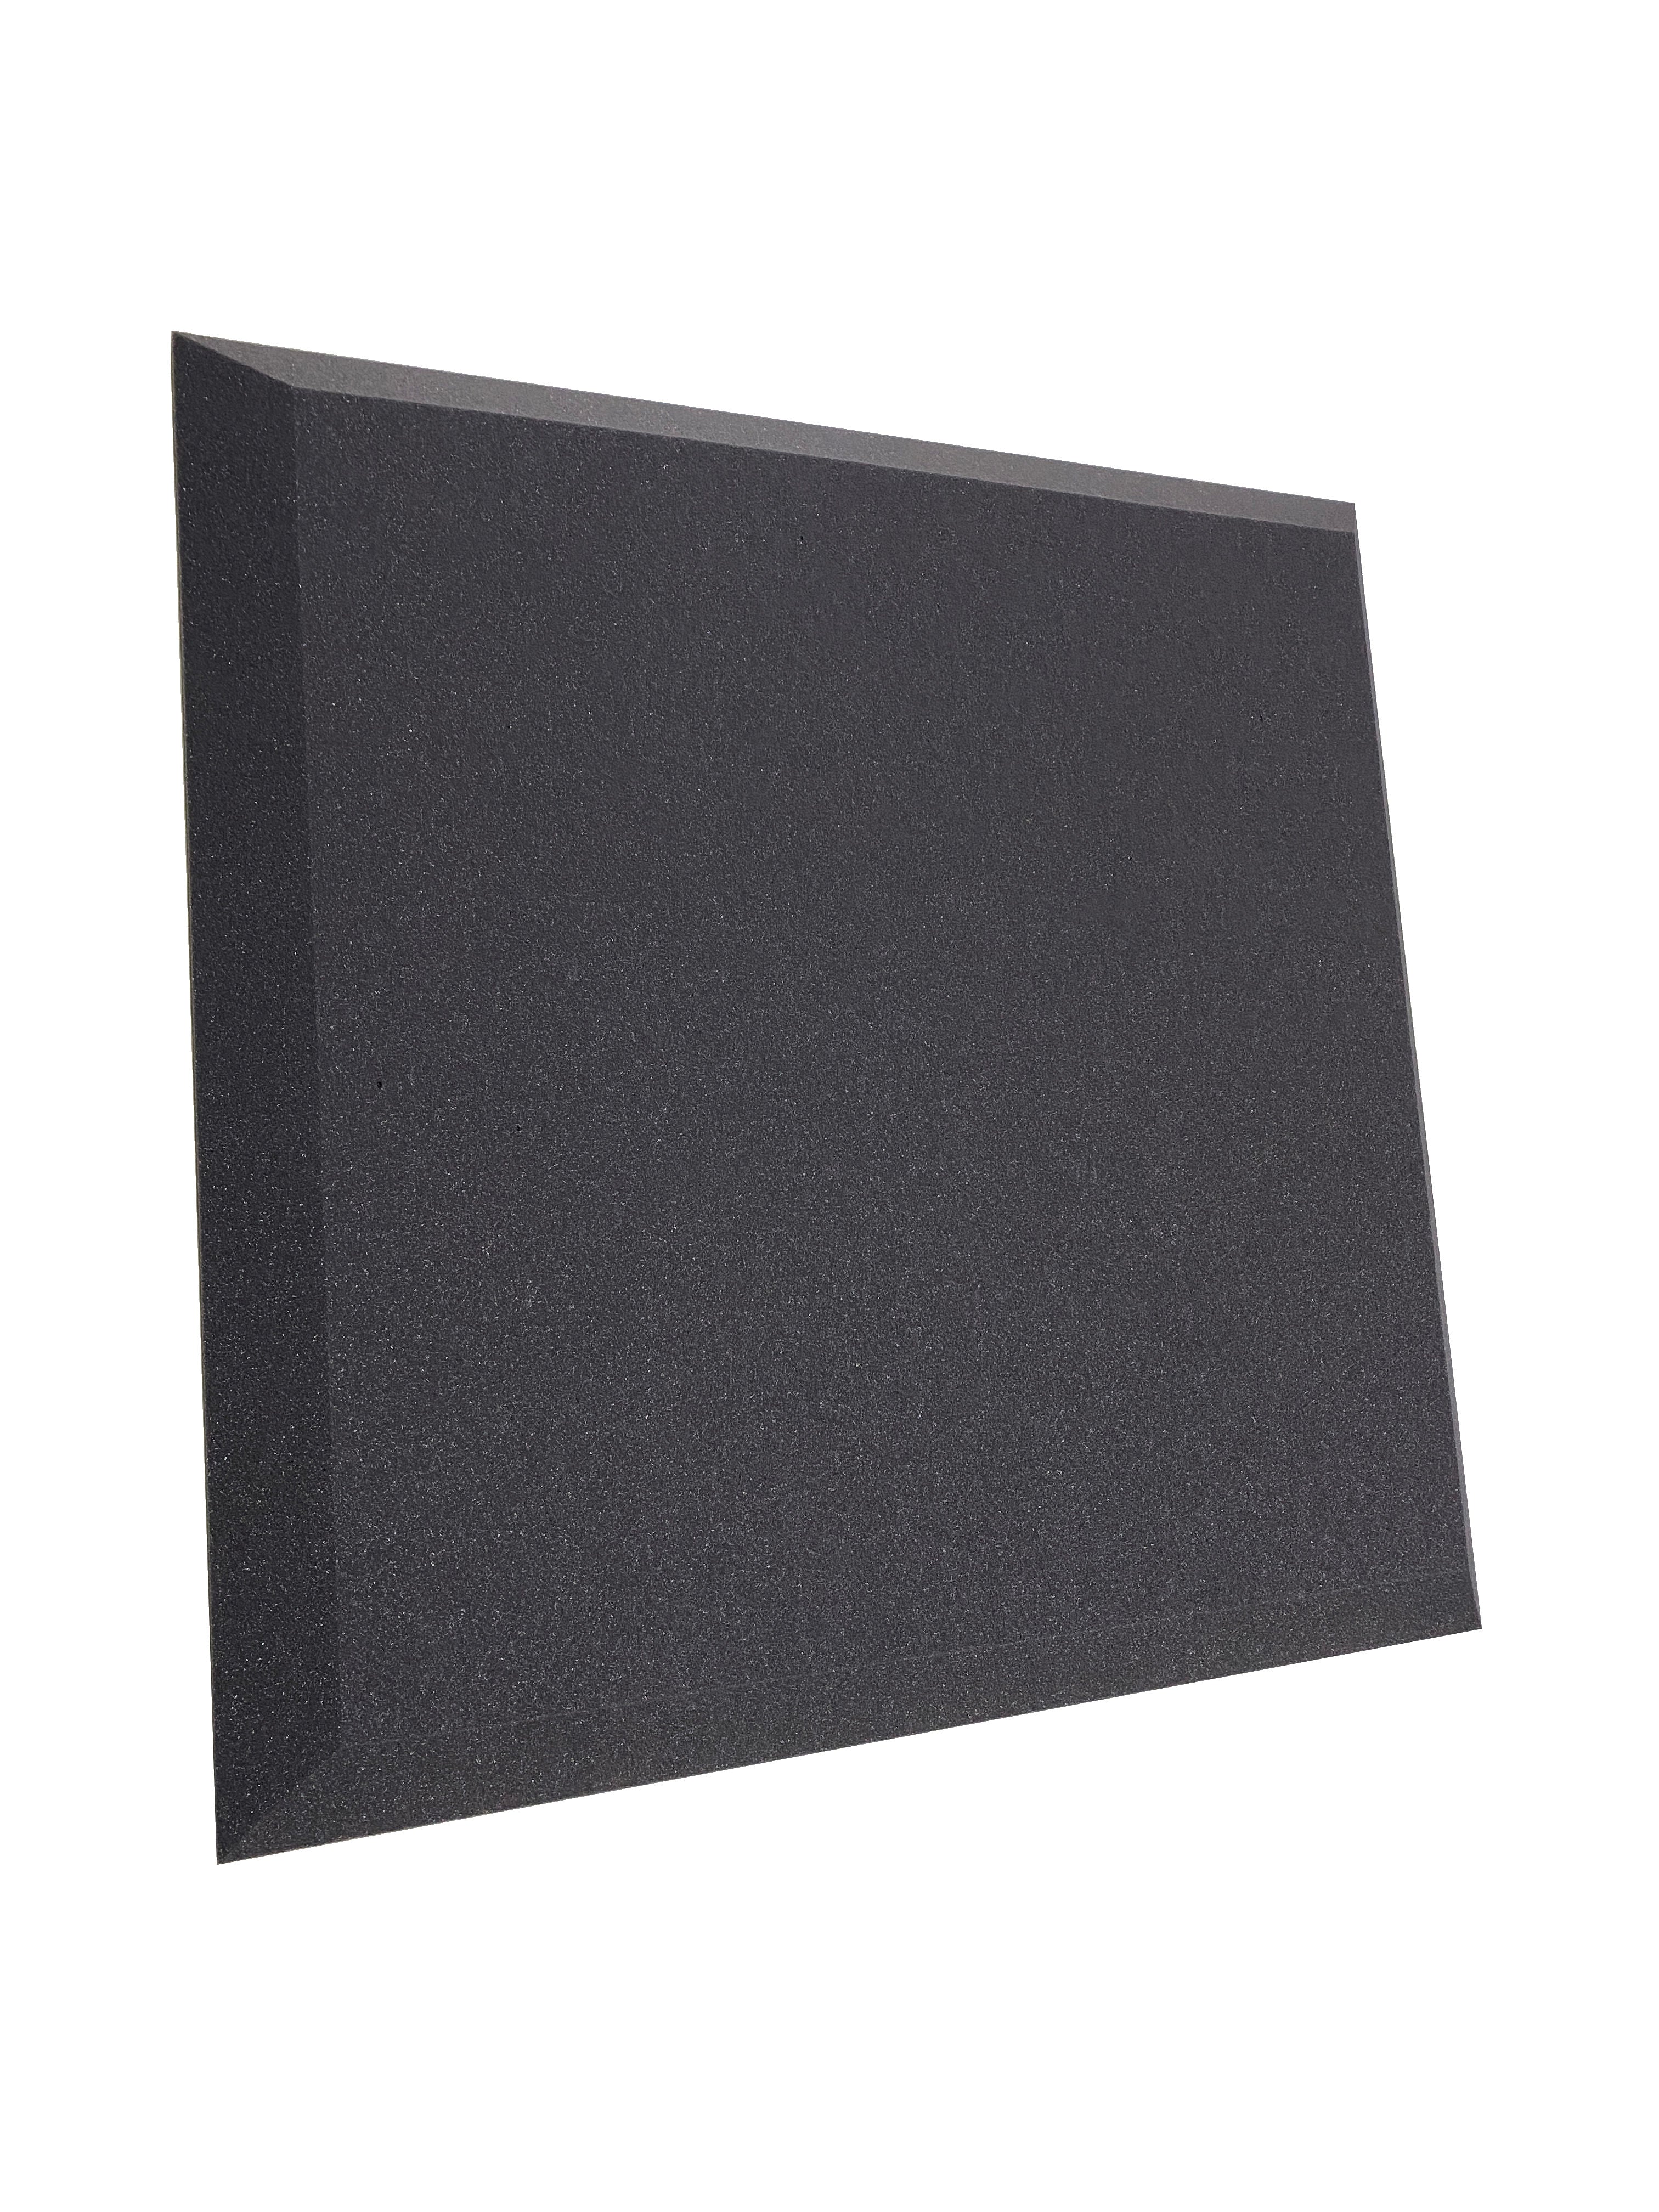 Acheter gris-fonce S. E. UN . M. Lot de dalles en mousse Acoustic Studio de 7,6 cm – 6 dalles, couverture de 3,48 m².